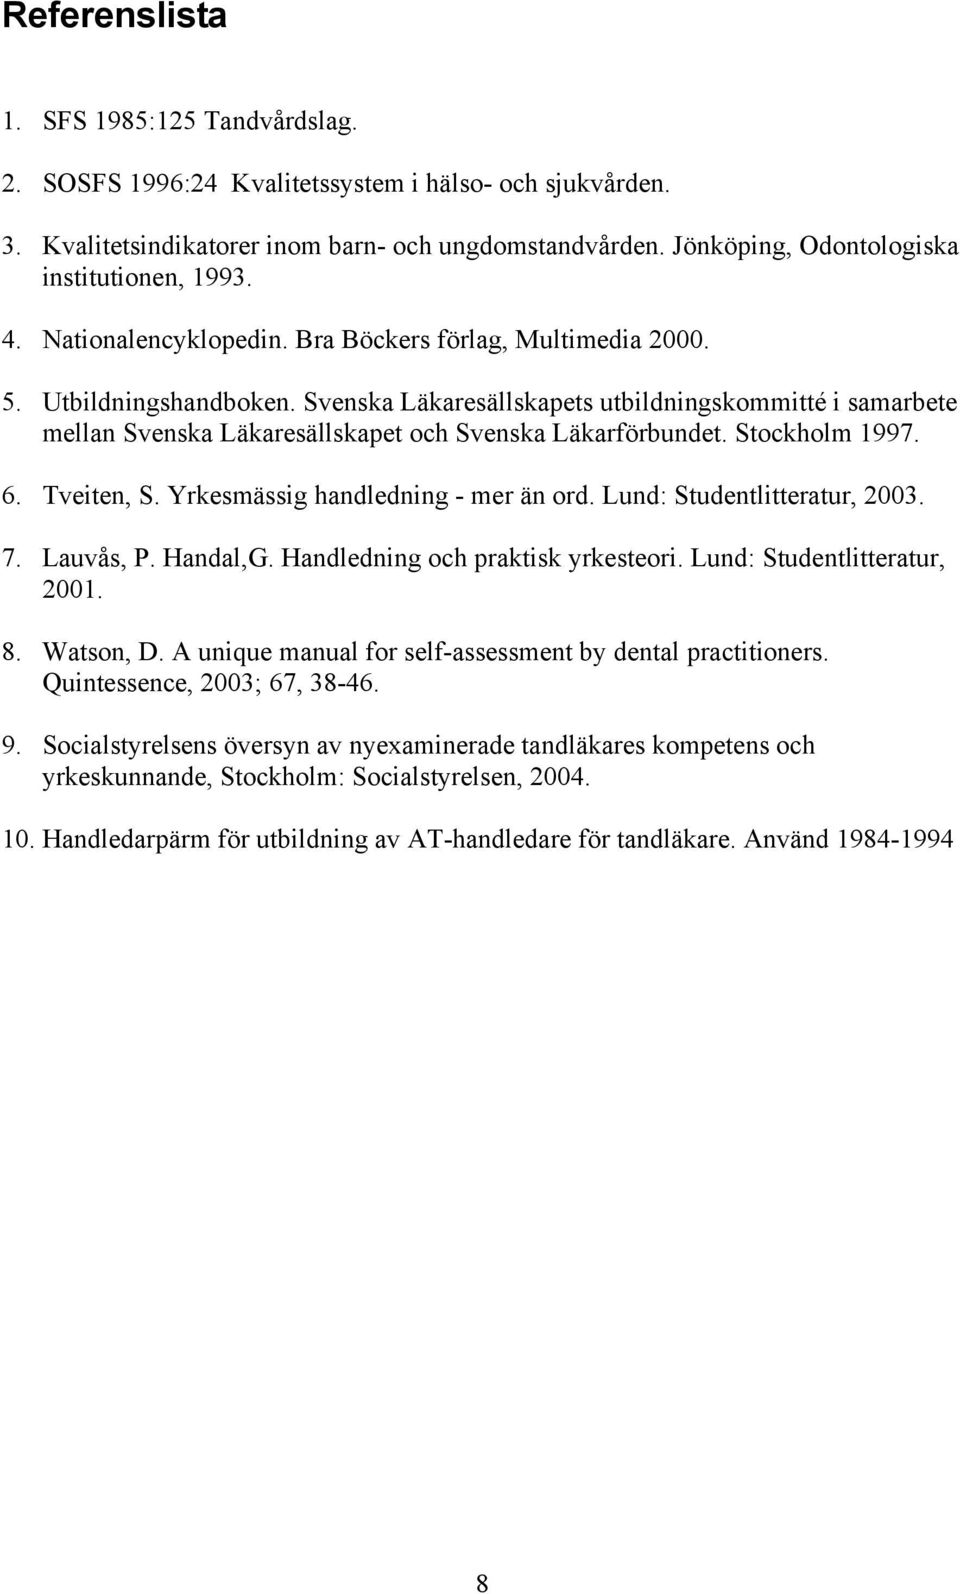 Svenska Läkaresällskapets utbildningskommitté i samarbete mellan Svenska Läkaresällskapet och Svenska Läkarförbundet. Stockholm 1997. 6. Tveiten, S. Yrkesmässig handledning - mer än ord.